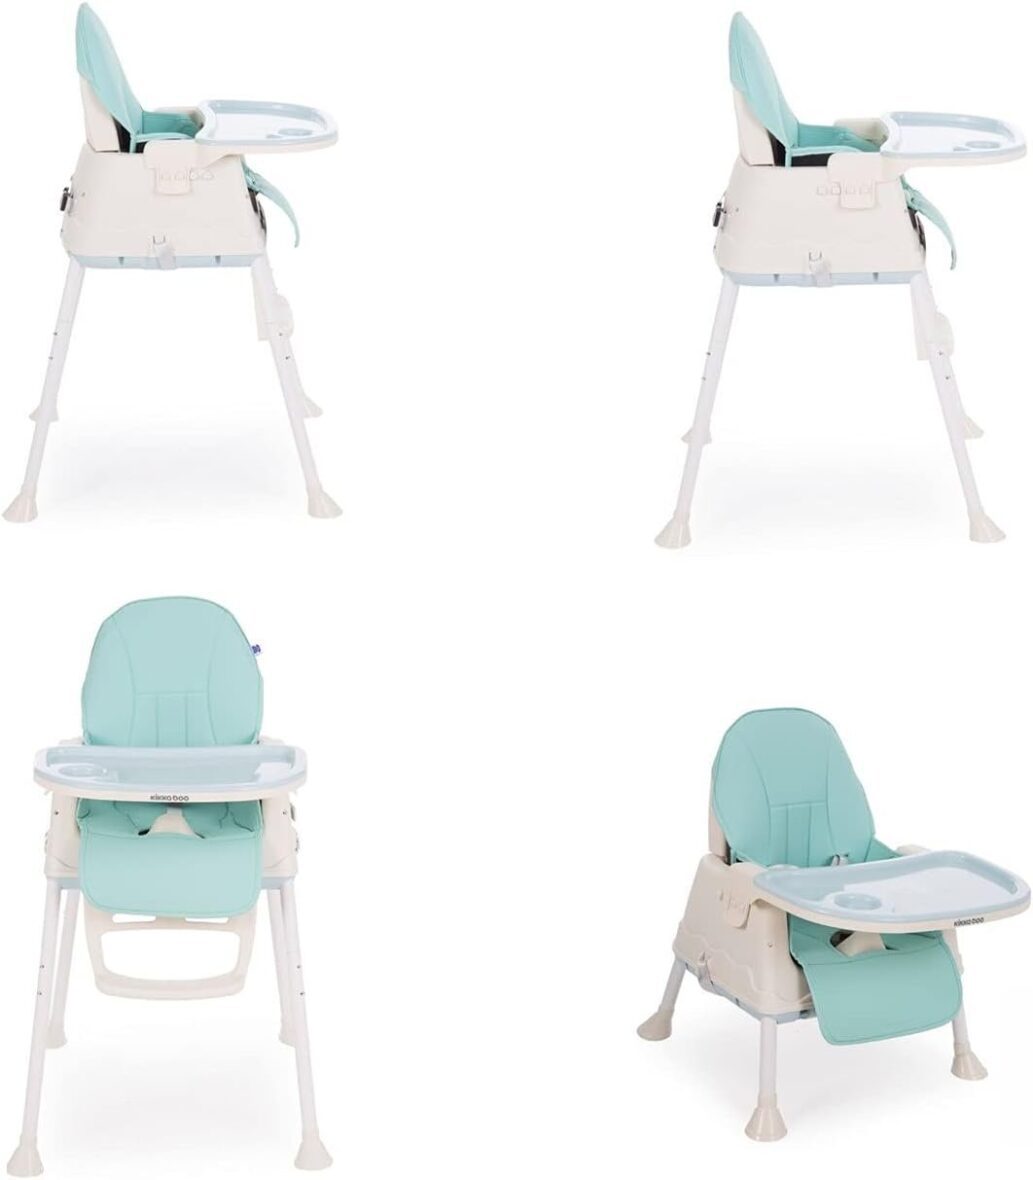 chaise-haute-creamy-2en1-kikkaboo-2.jpg